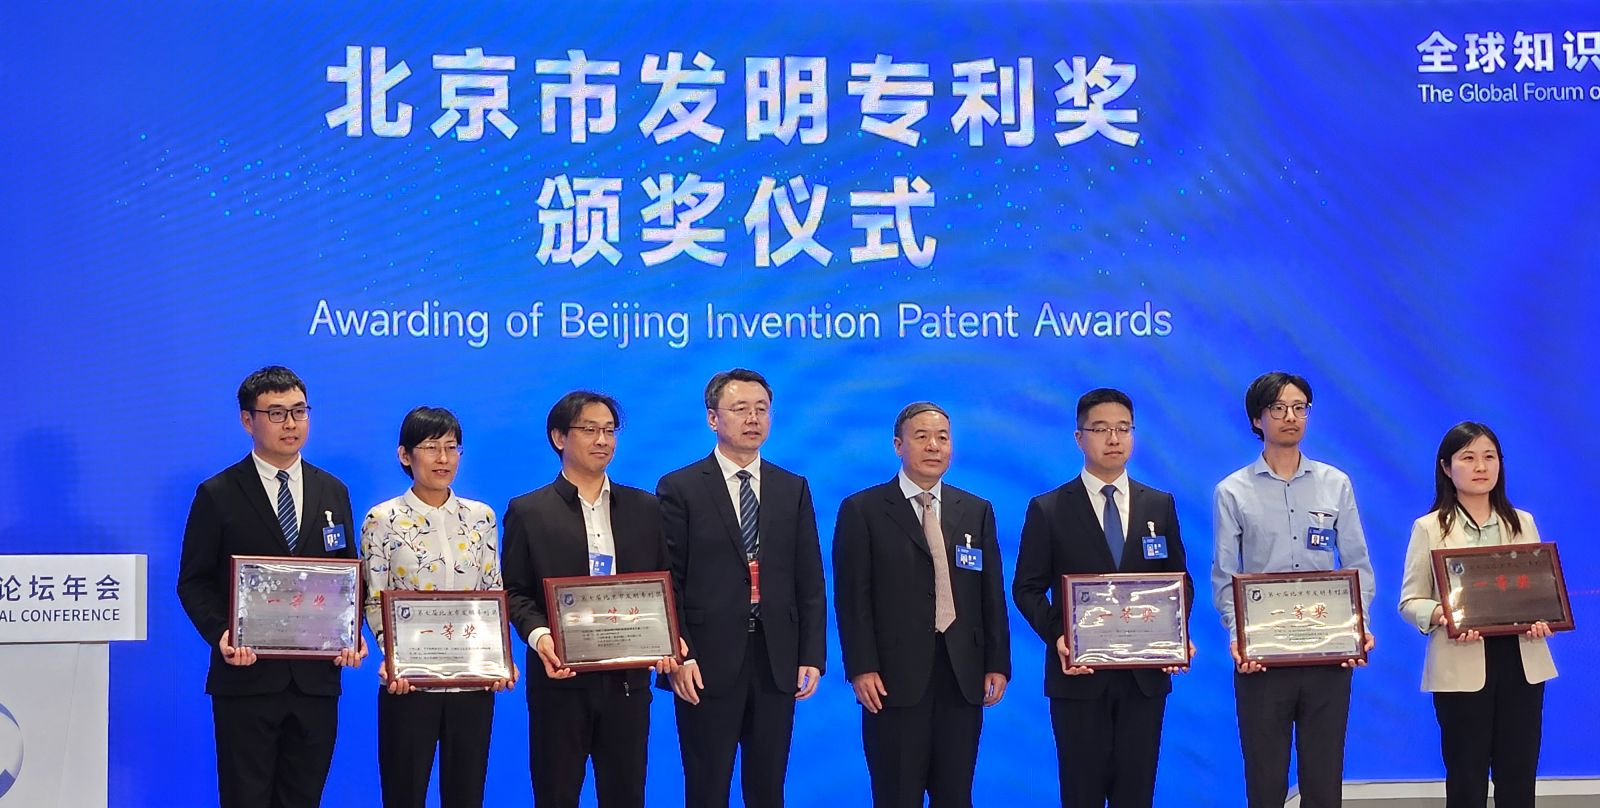 奥布替尼核心专利获颁第七届北京市发明专利奖一等奖